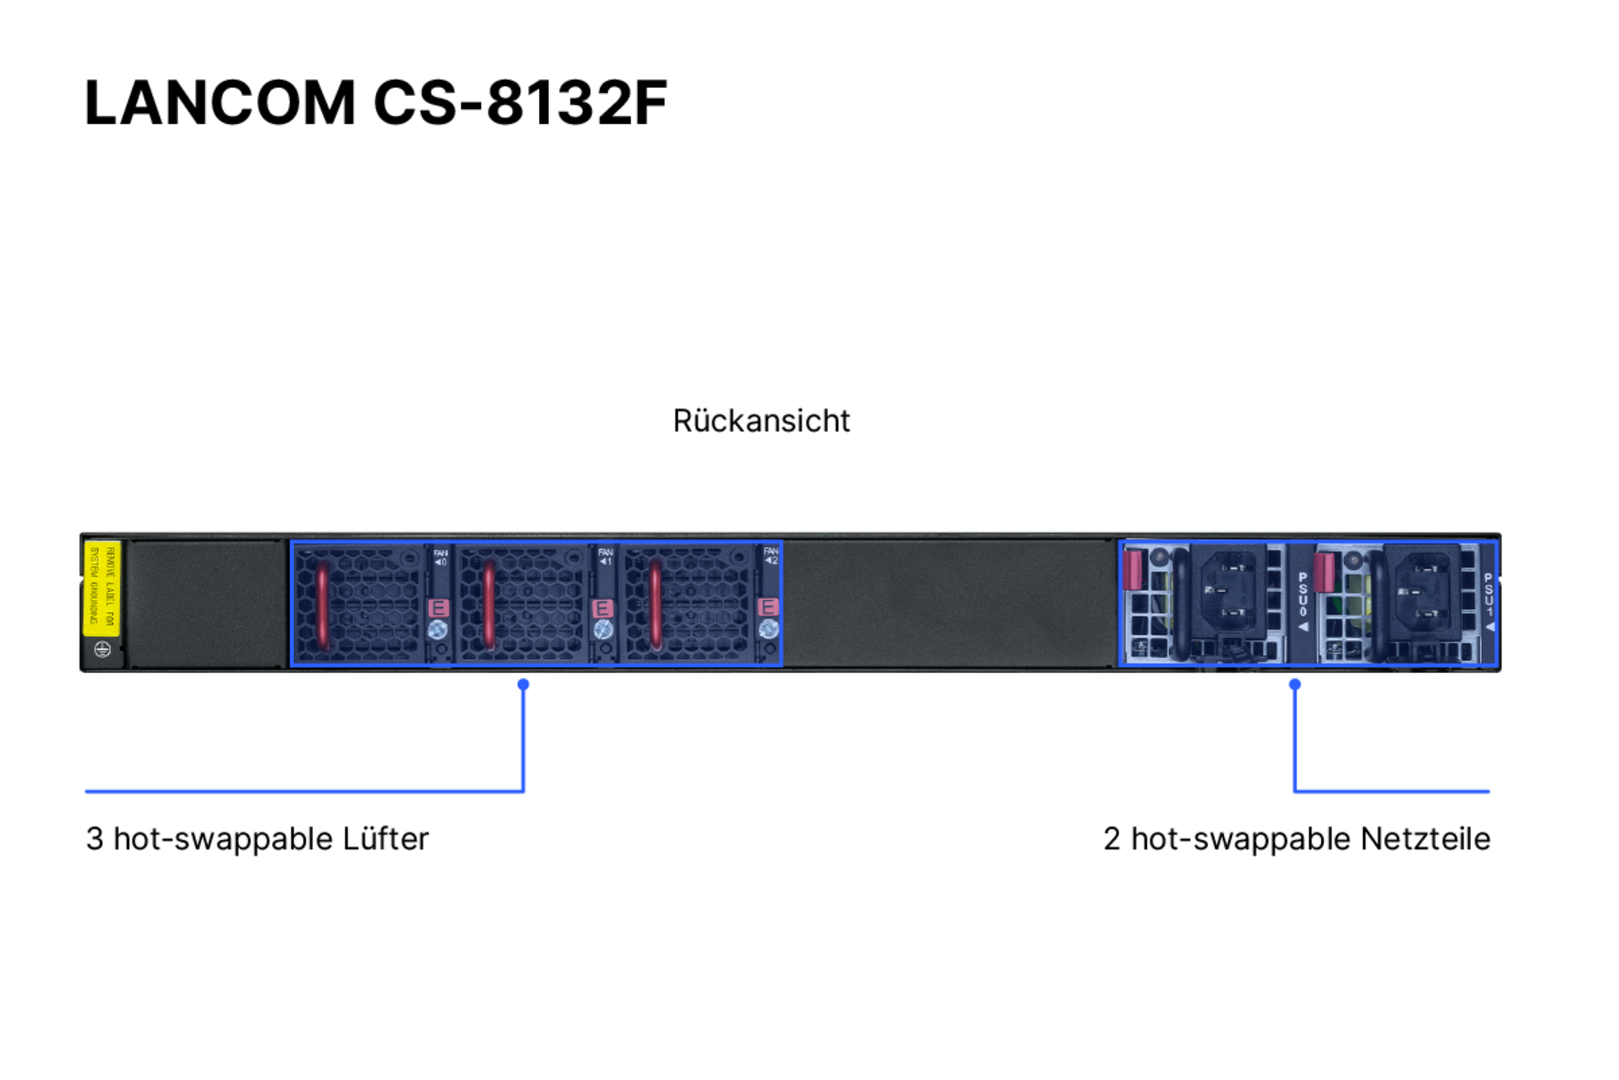 Produktfoto des LANCOM CS-8132F mit Beschriftung der Portkonfigurationen auf der Rückseite